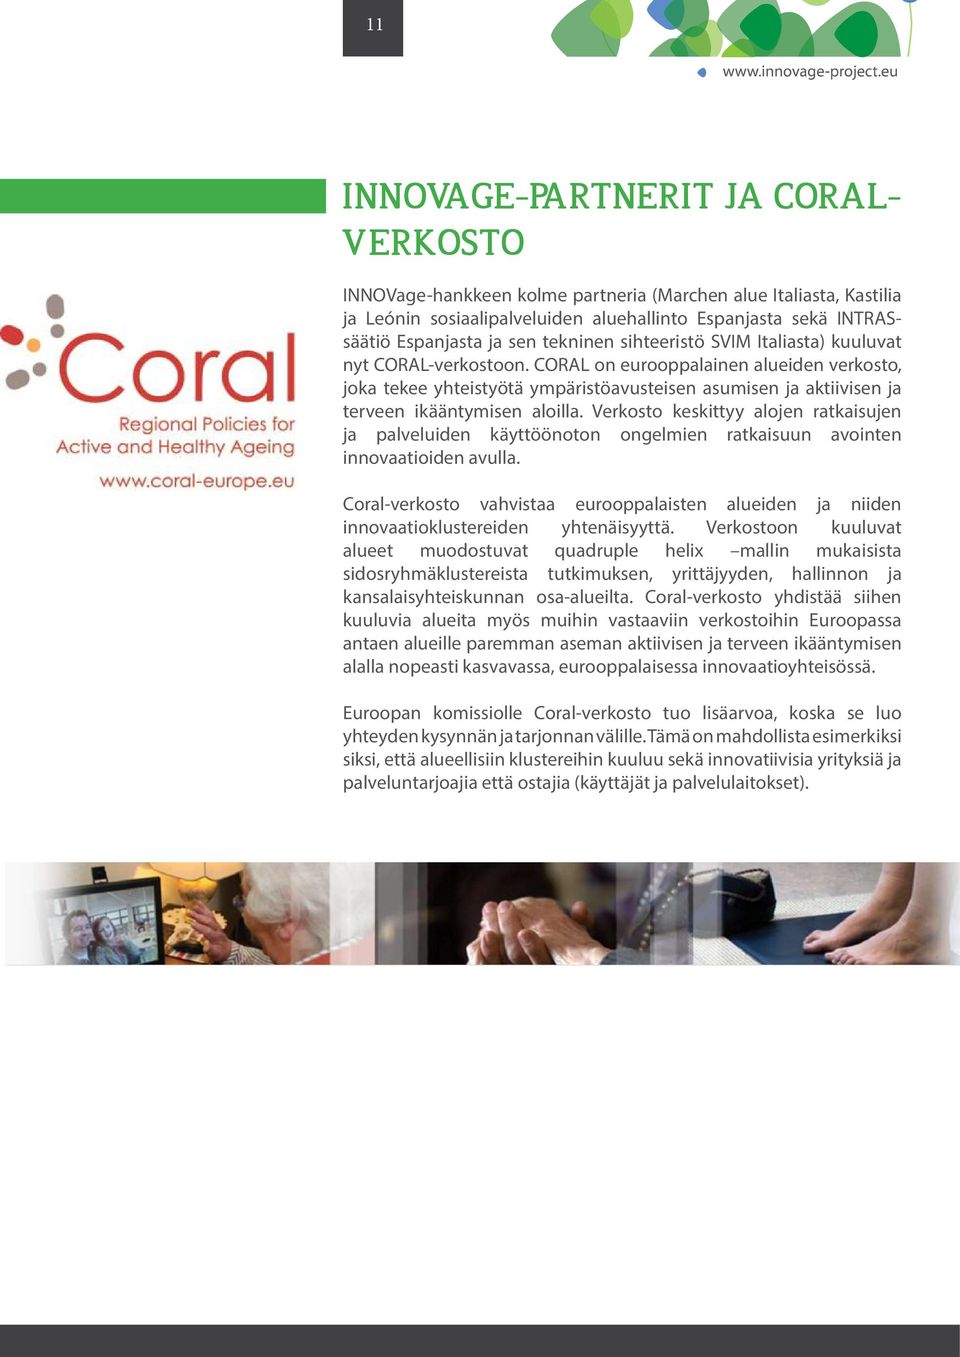 CORAL on eurooppalainen alueiden verkosto, joka tekee yhteistyötä ympäristöavusteisen asumisen ja aktiivisen ja terveen ikääntymisen aloilla.